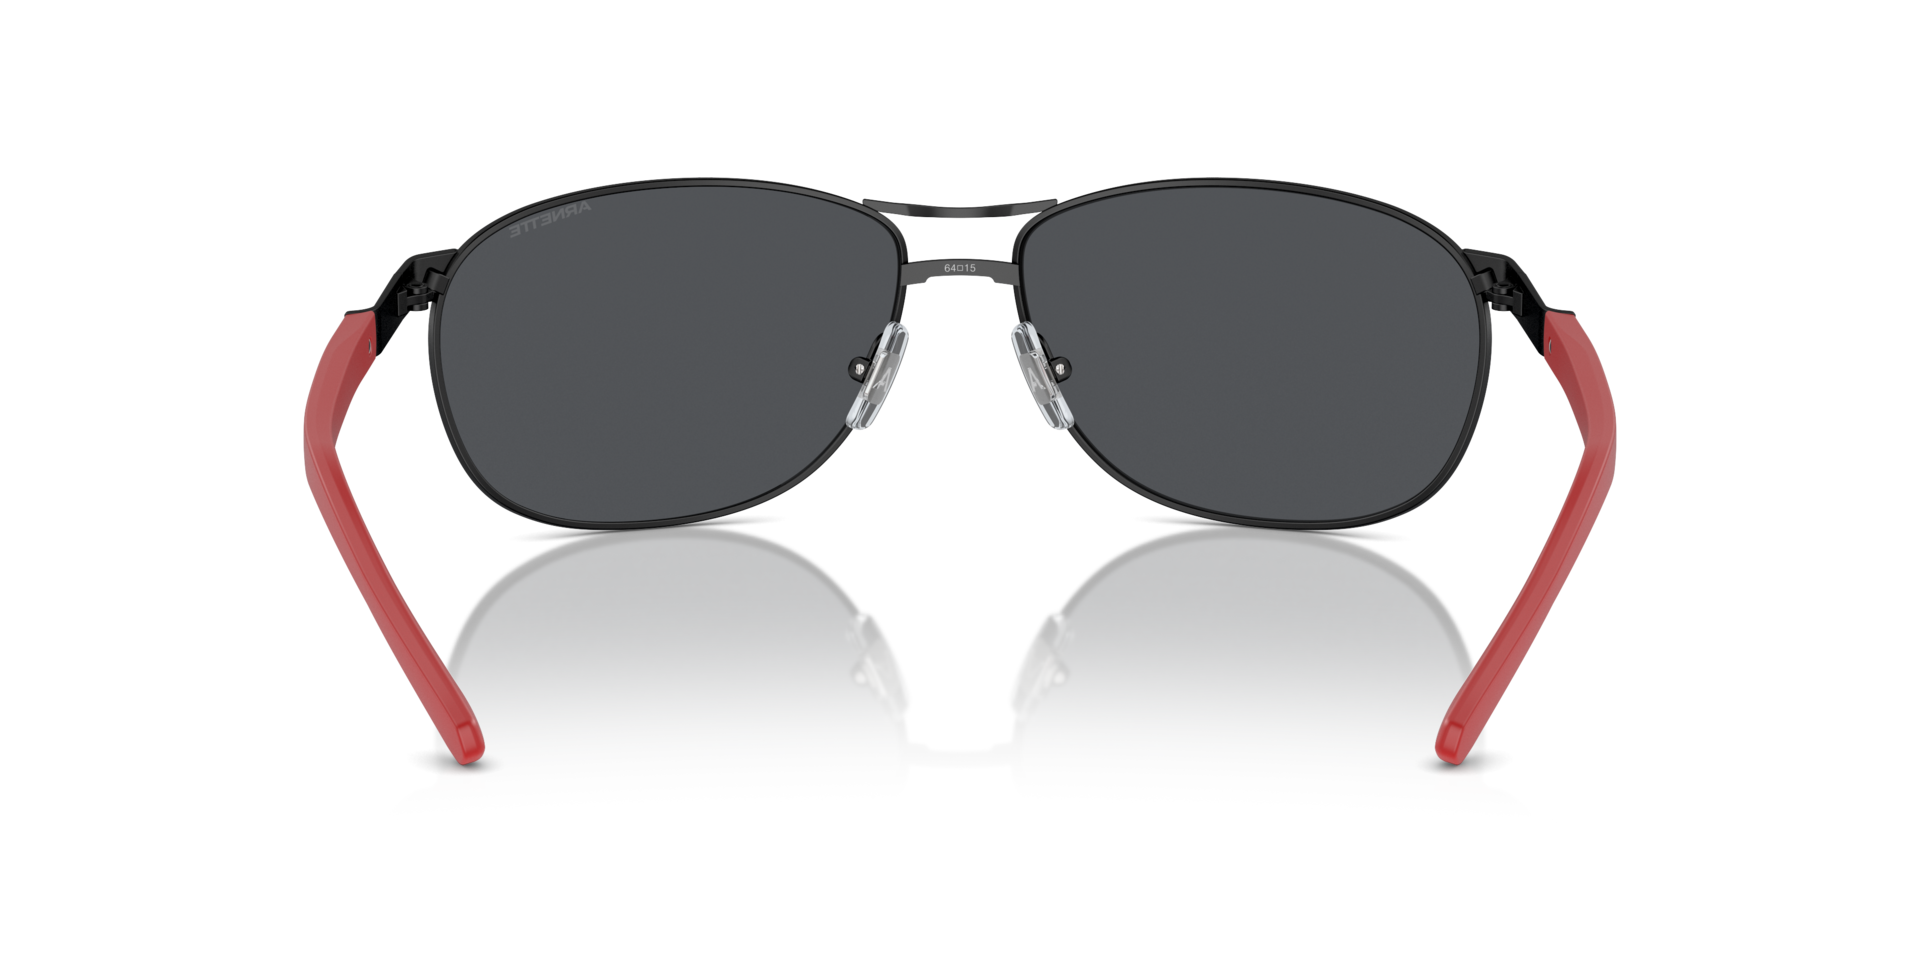 Das Bild zeigt die Sonnenbrille AN3090 737/87 von der Marke Arnette in schwarz.